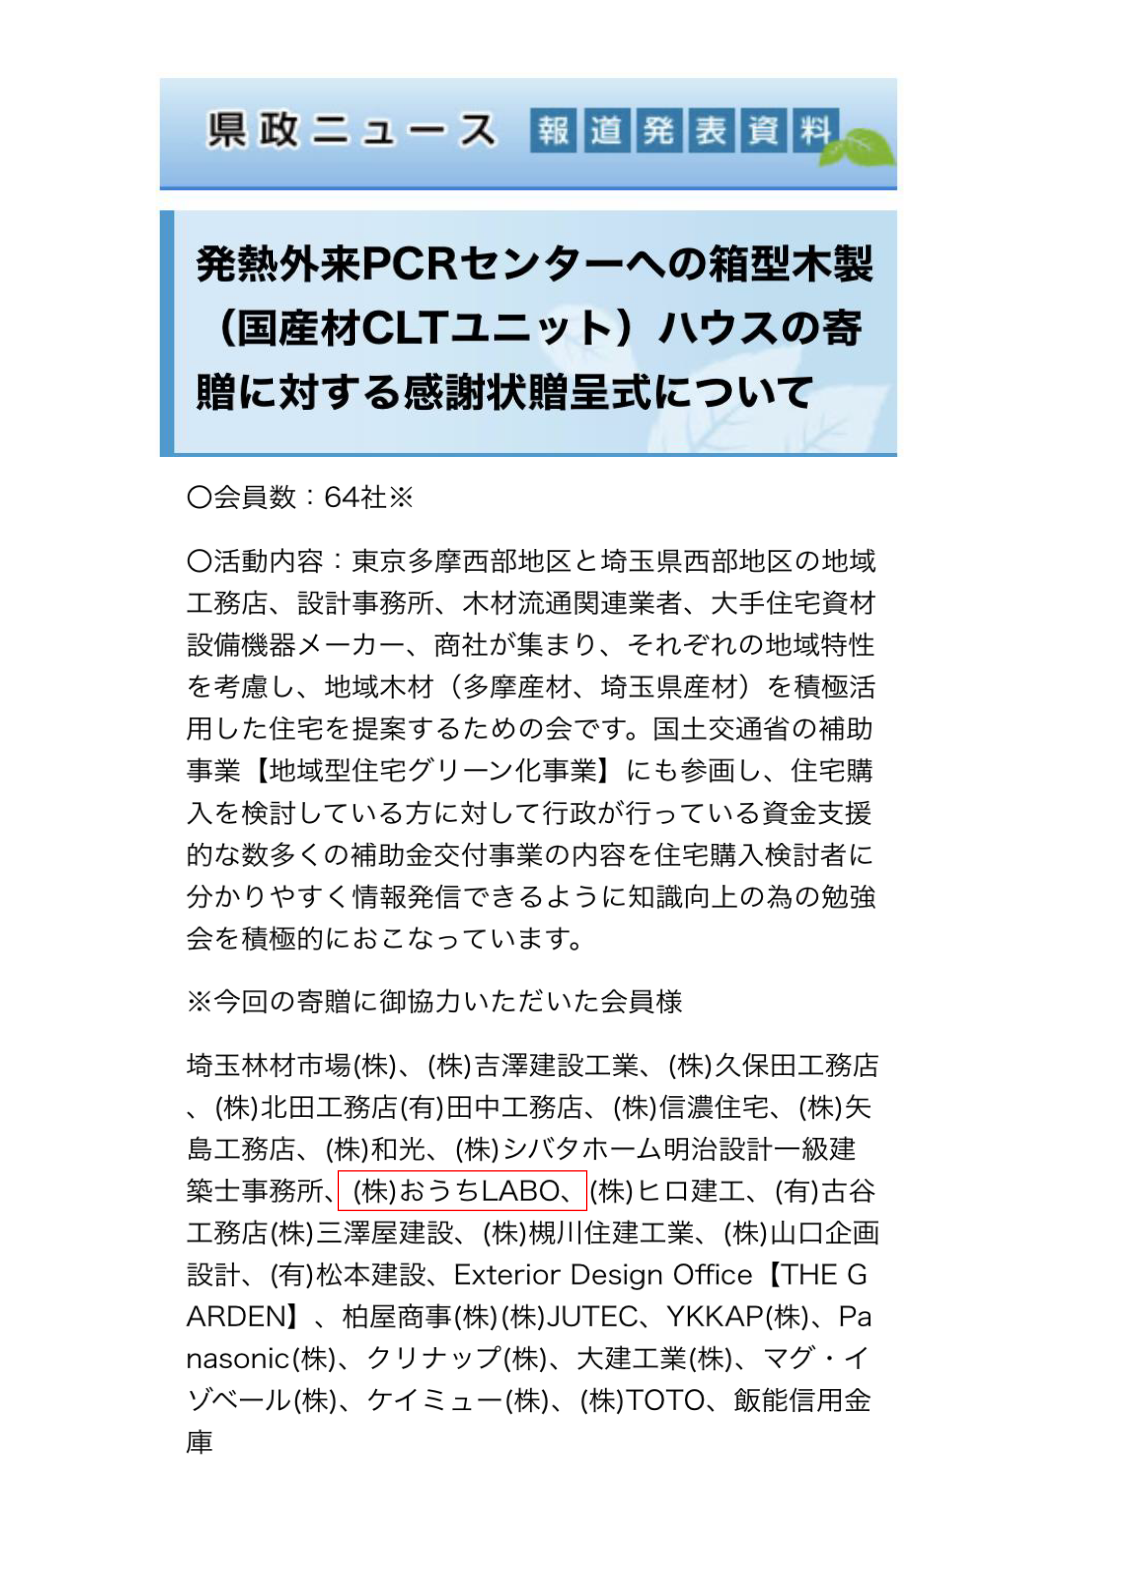 PCR検査場設置【埼玉県の新型コロナ感染対策に協力】